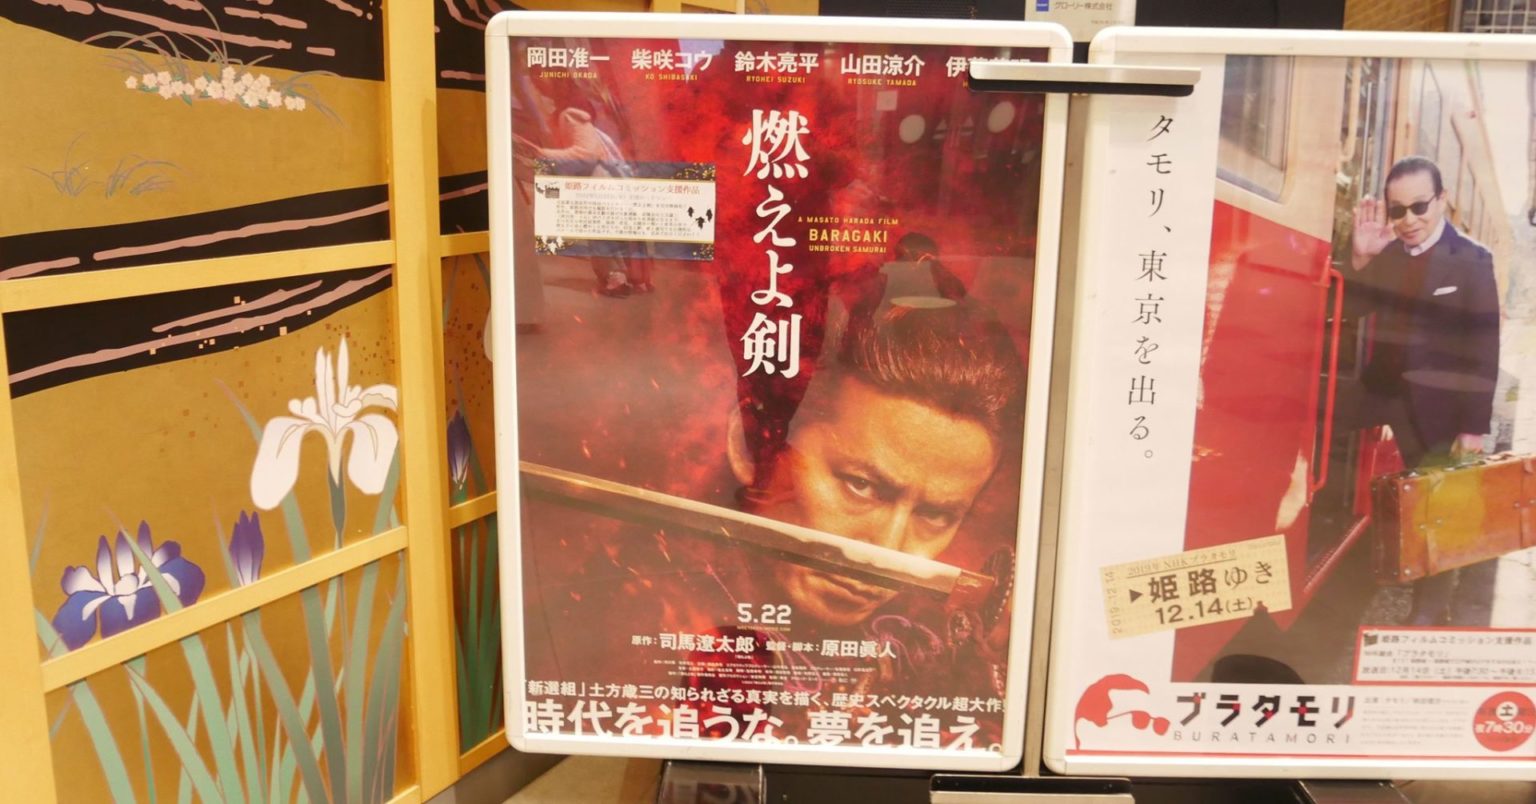 姫路フィルムコミッションの支援作品 燃えよ剣 の映画の公開がコロナウィルス感染拡大を受けて延期することが決定したみたい 姫路市のローカル情報サイト 裏観光情報も